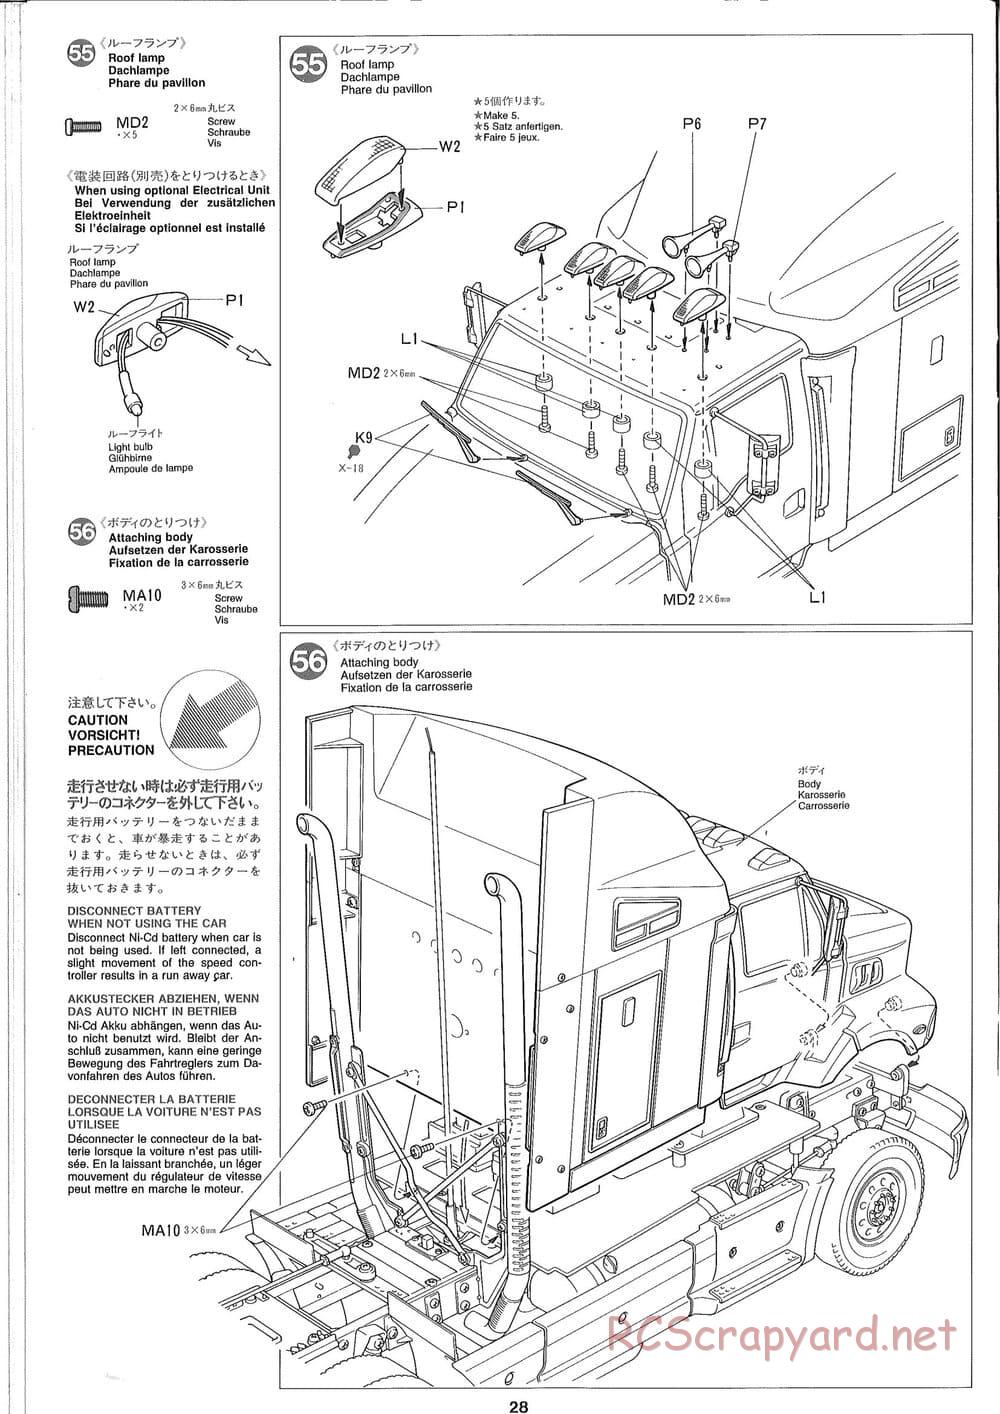 Tamiya - Ford Aeromax - Manual - Page 28